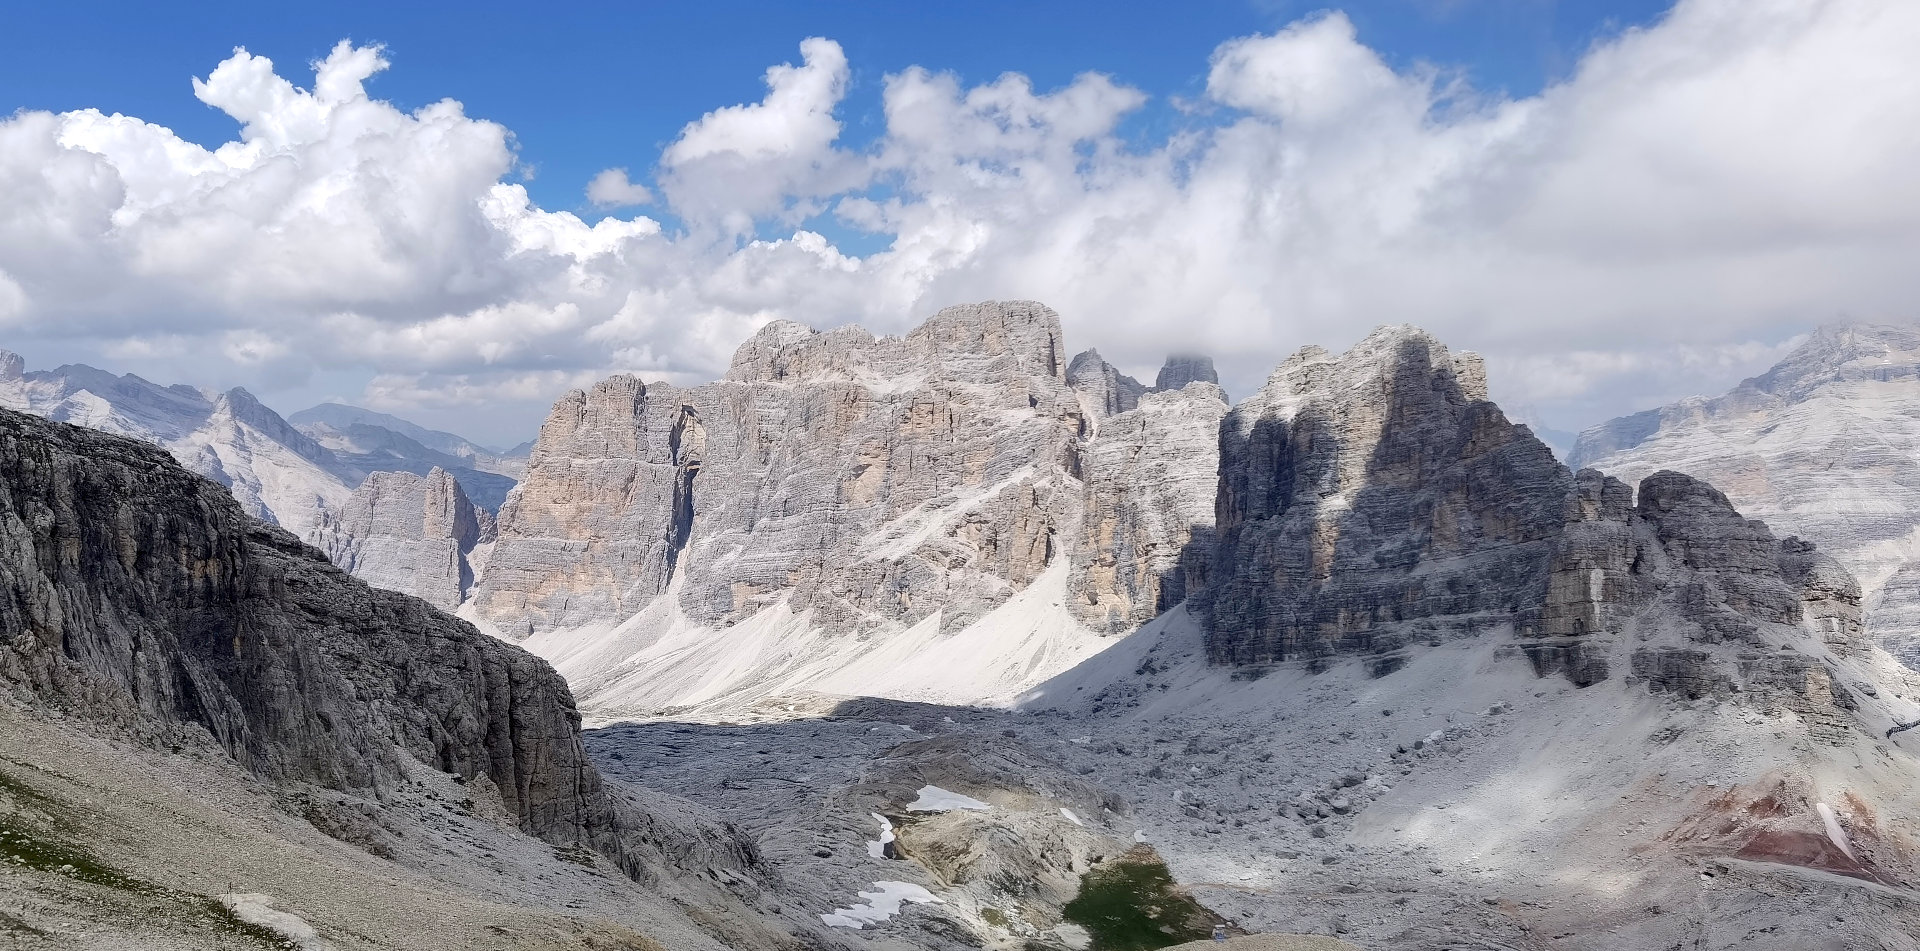 The rocky majesty of the Dolomites